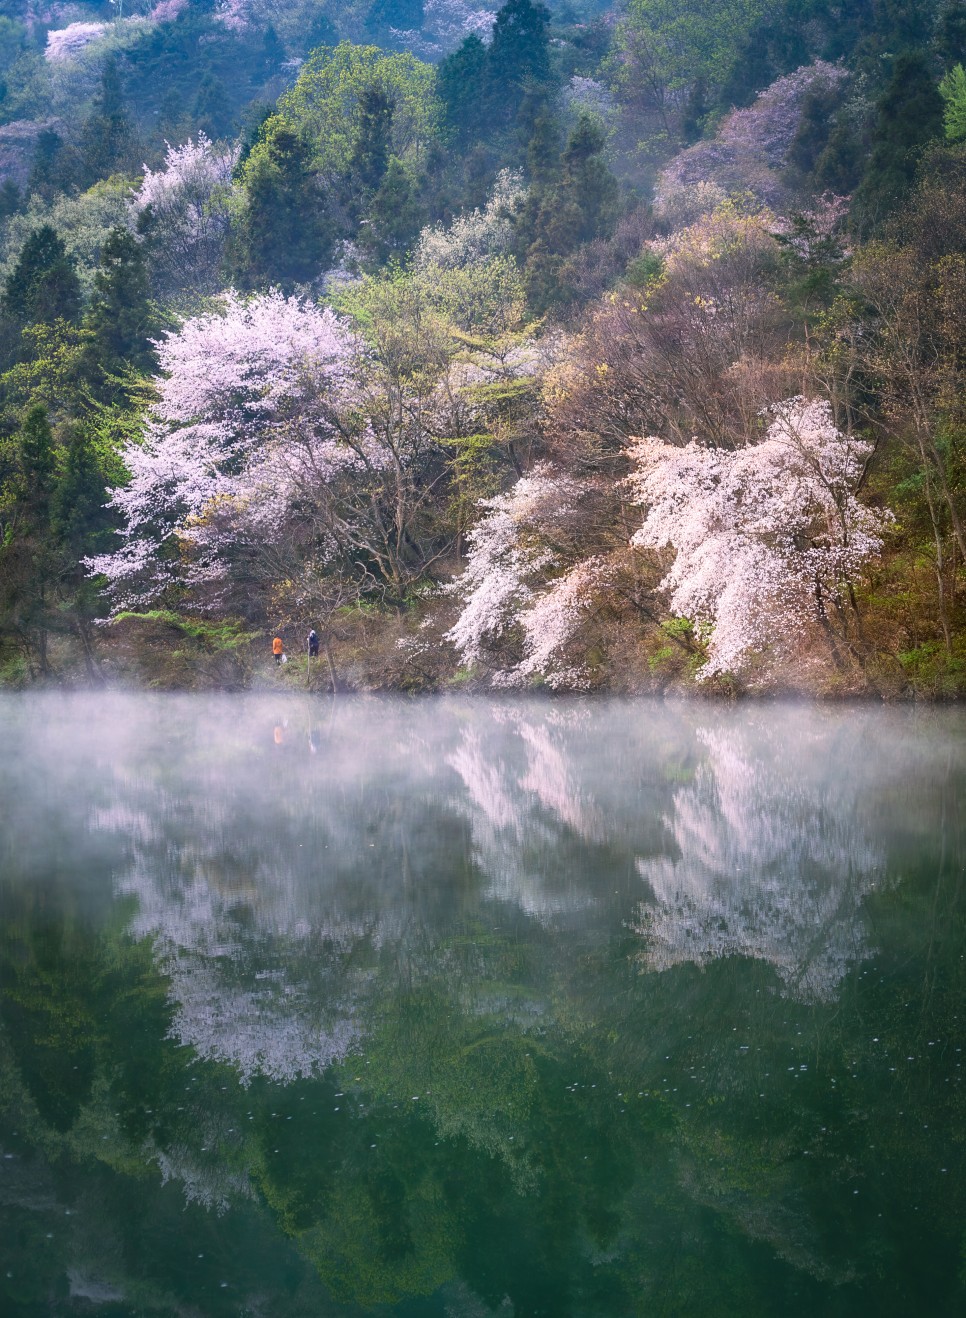 산벚꽃 출사지 화순 세량지의 아름다운 반영 사진 : 사진사와 일반인의 시각의 차이